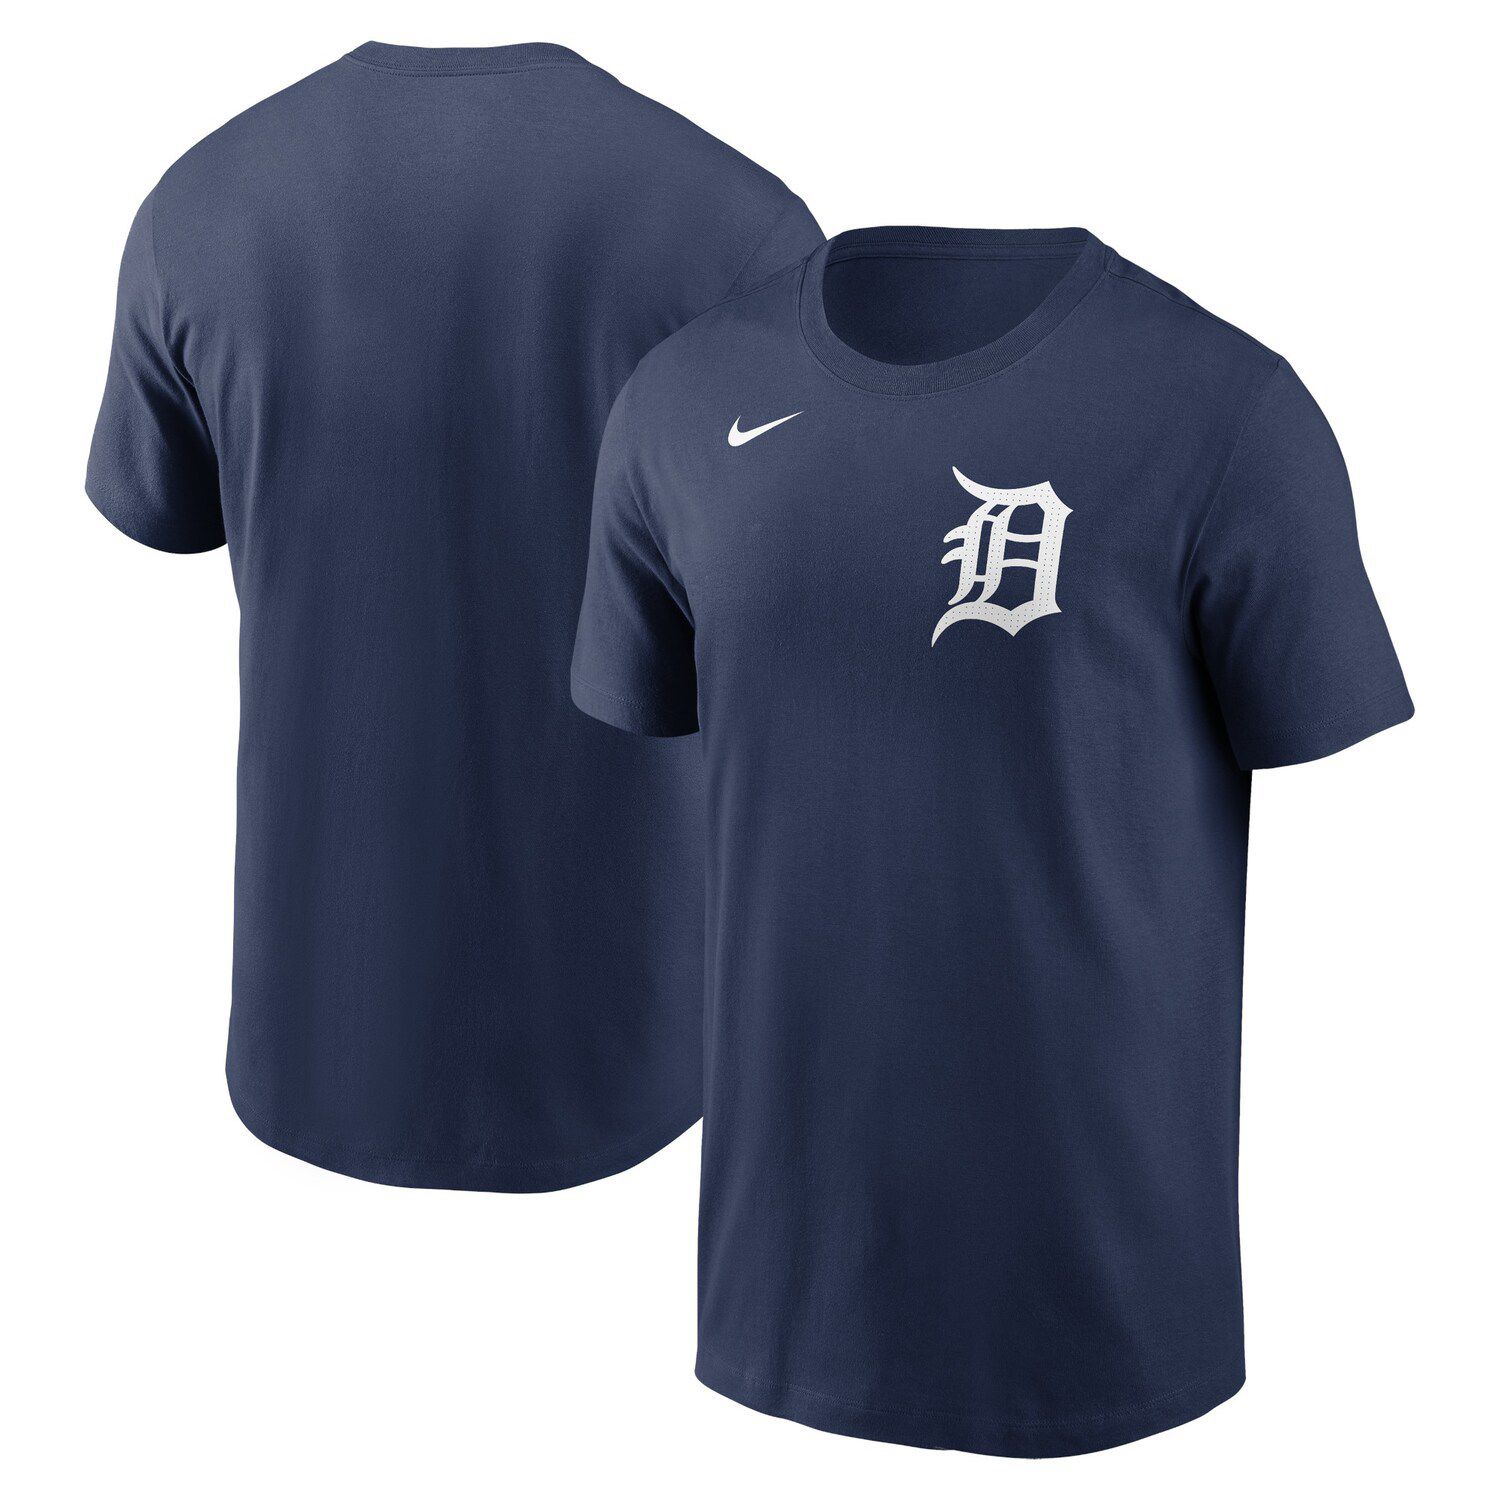 Detroit Tigers merchandise